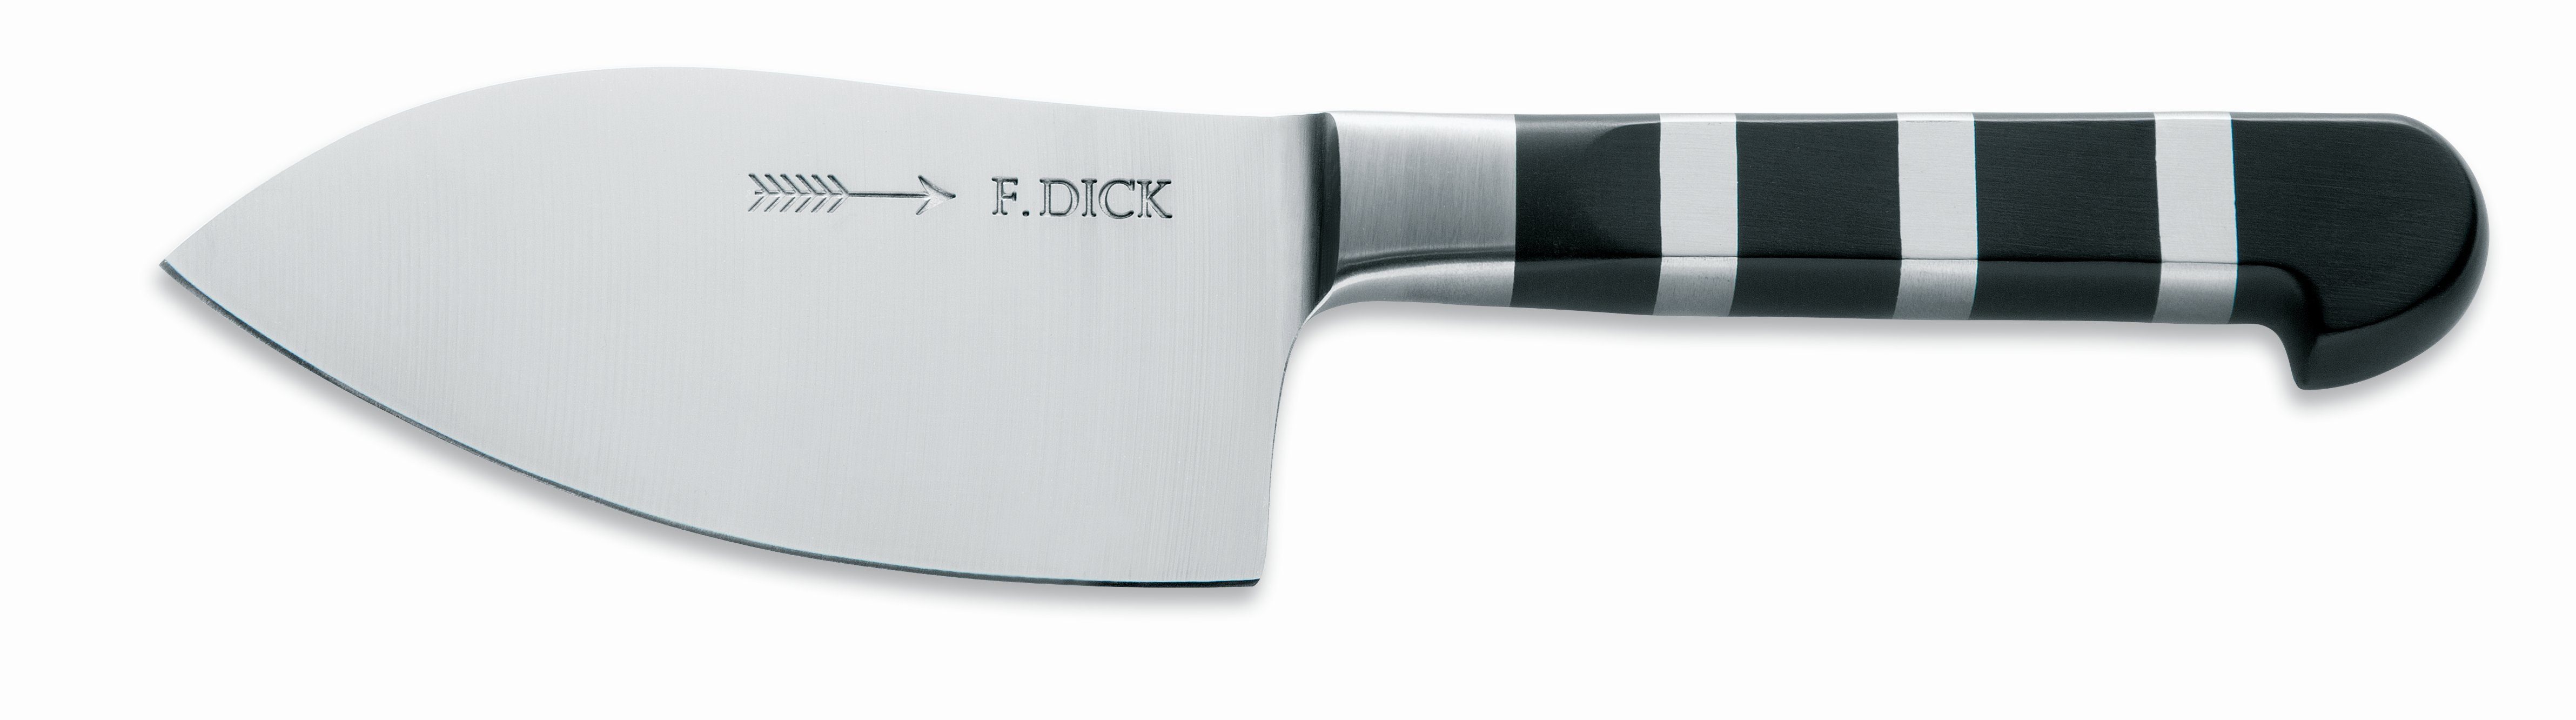 1905 Dick cm, X50CrMoV15 Stahl KÃ¼chenmesser DICK Kräutermesser KrÃ¤utermesser Klinge F. 12 Messer